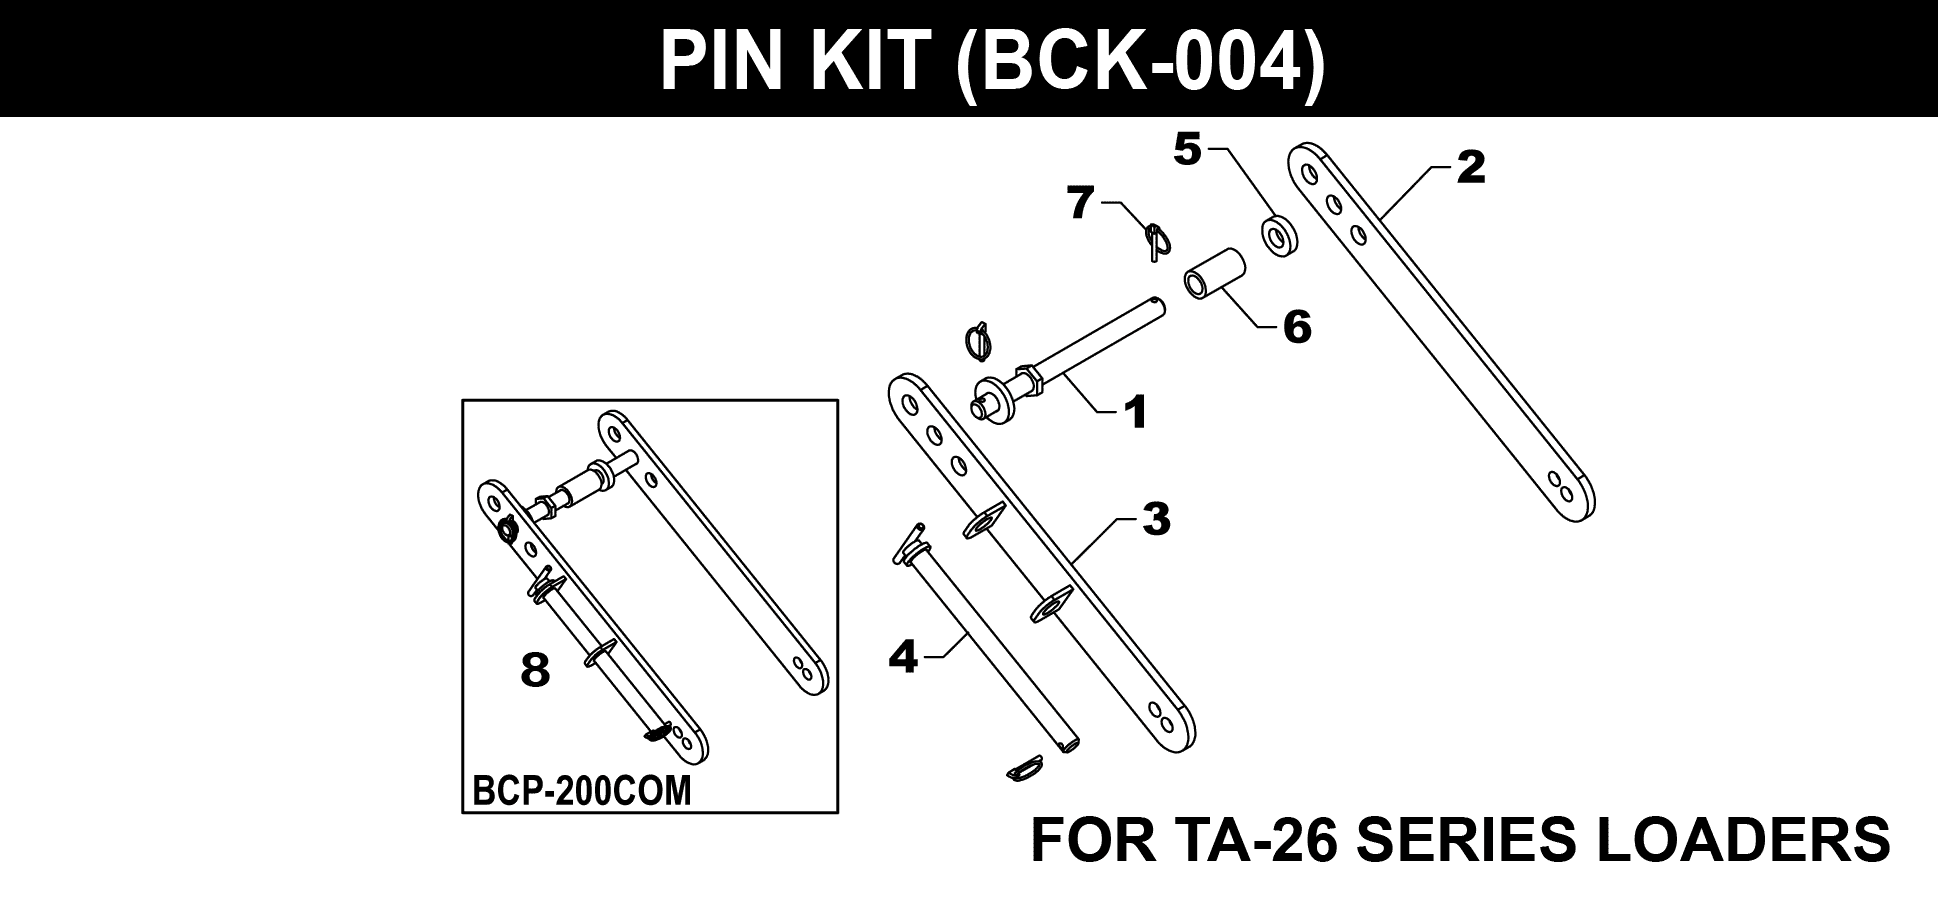 BCK-004 Pin Kit